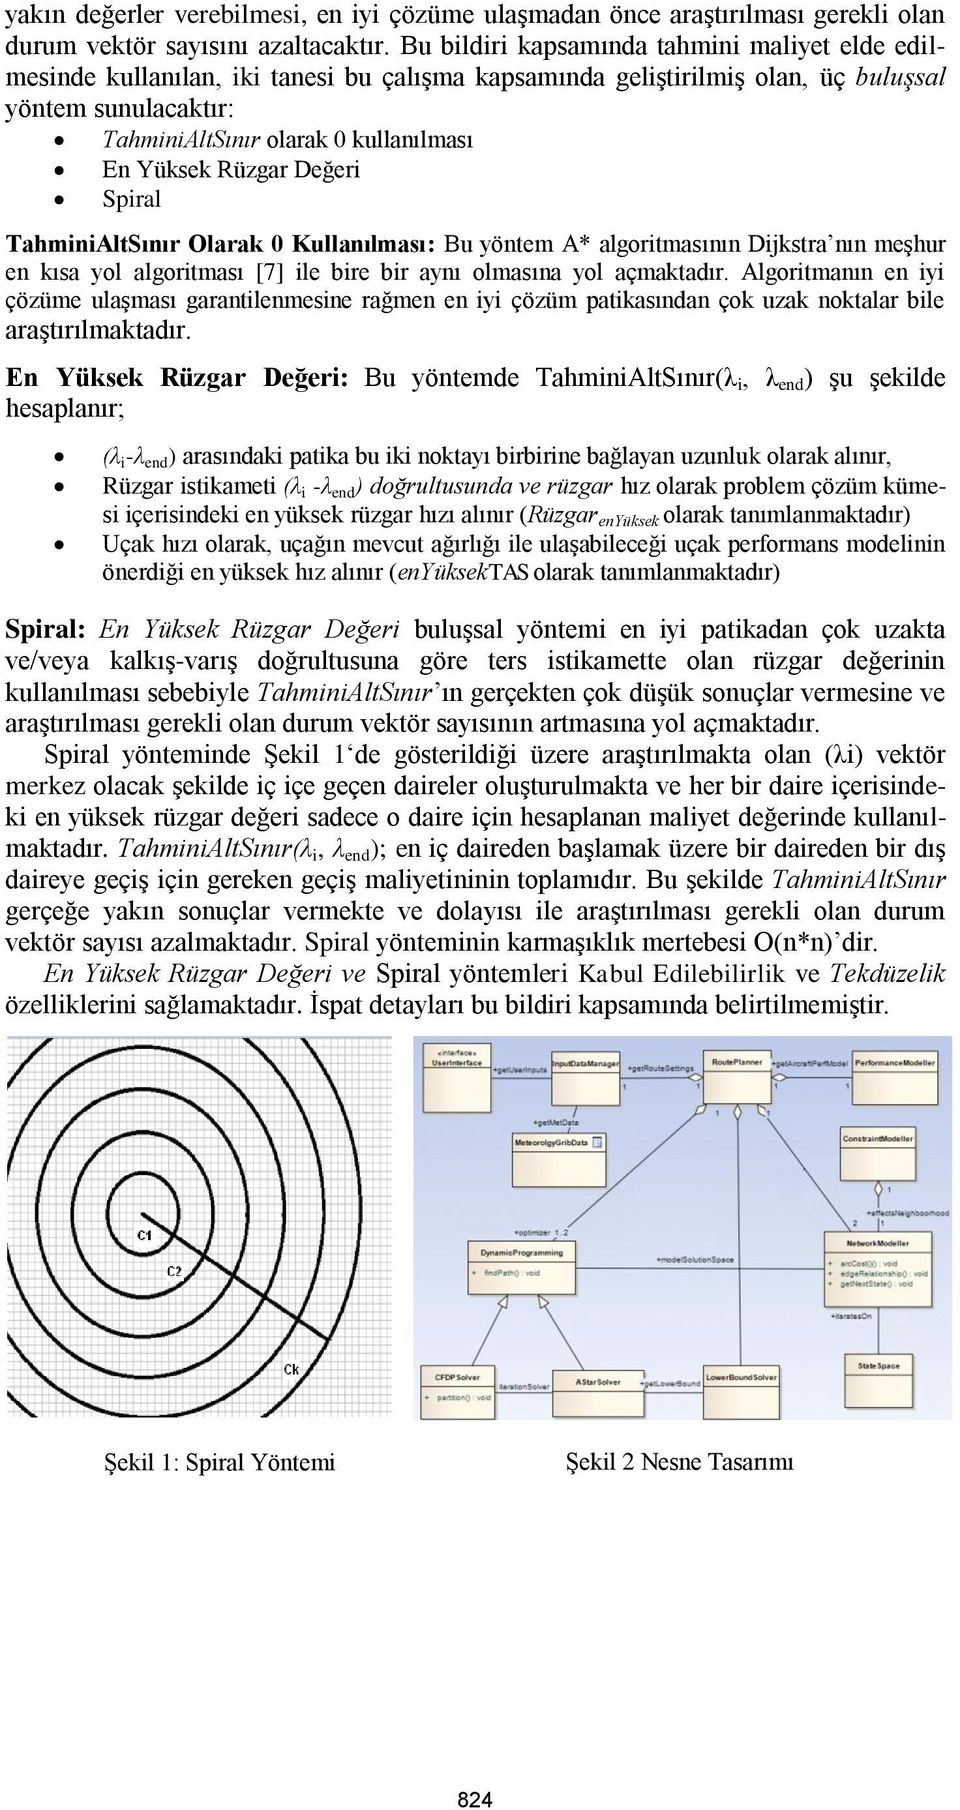 Yüksek Rüzgar Değeri Spiral TahminiAltSınır Olarak 0 Kullanılması: Bu yöntem A* algoritmasının Dijkstra nın meşhur en kısa yol algoritması [7] ile bire bir aynı olmasına yol açmaktadır.